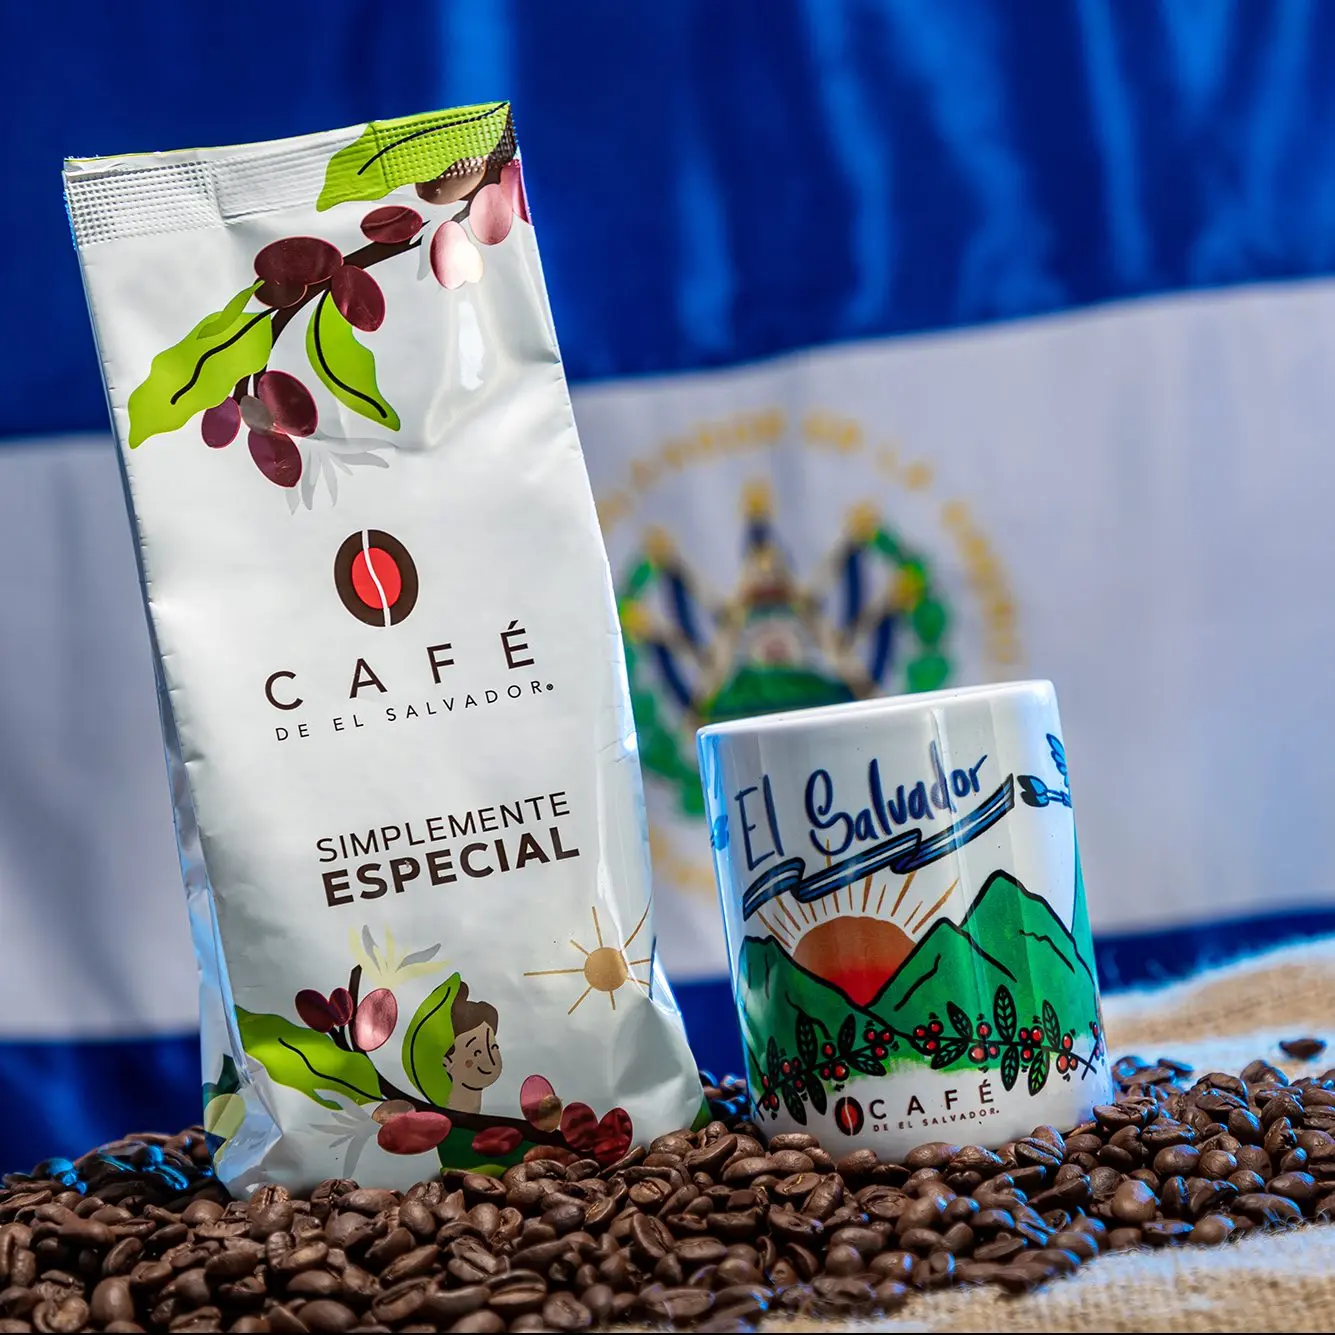 café de el salvador marca - Cuánto vale un café en El Salvador